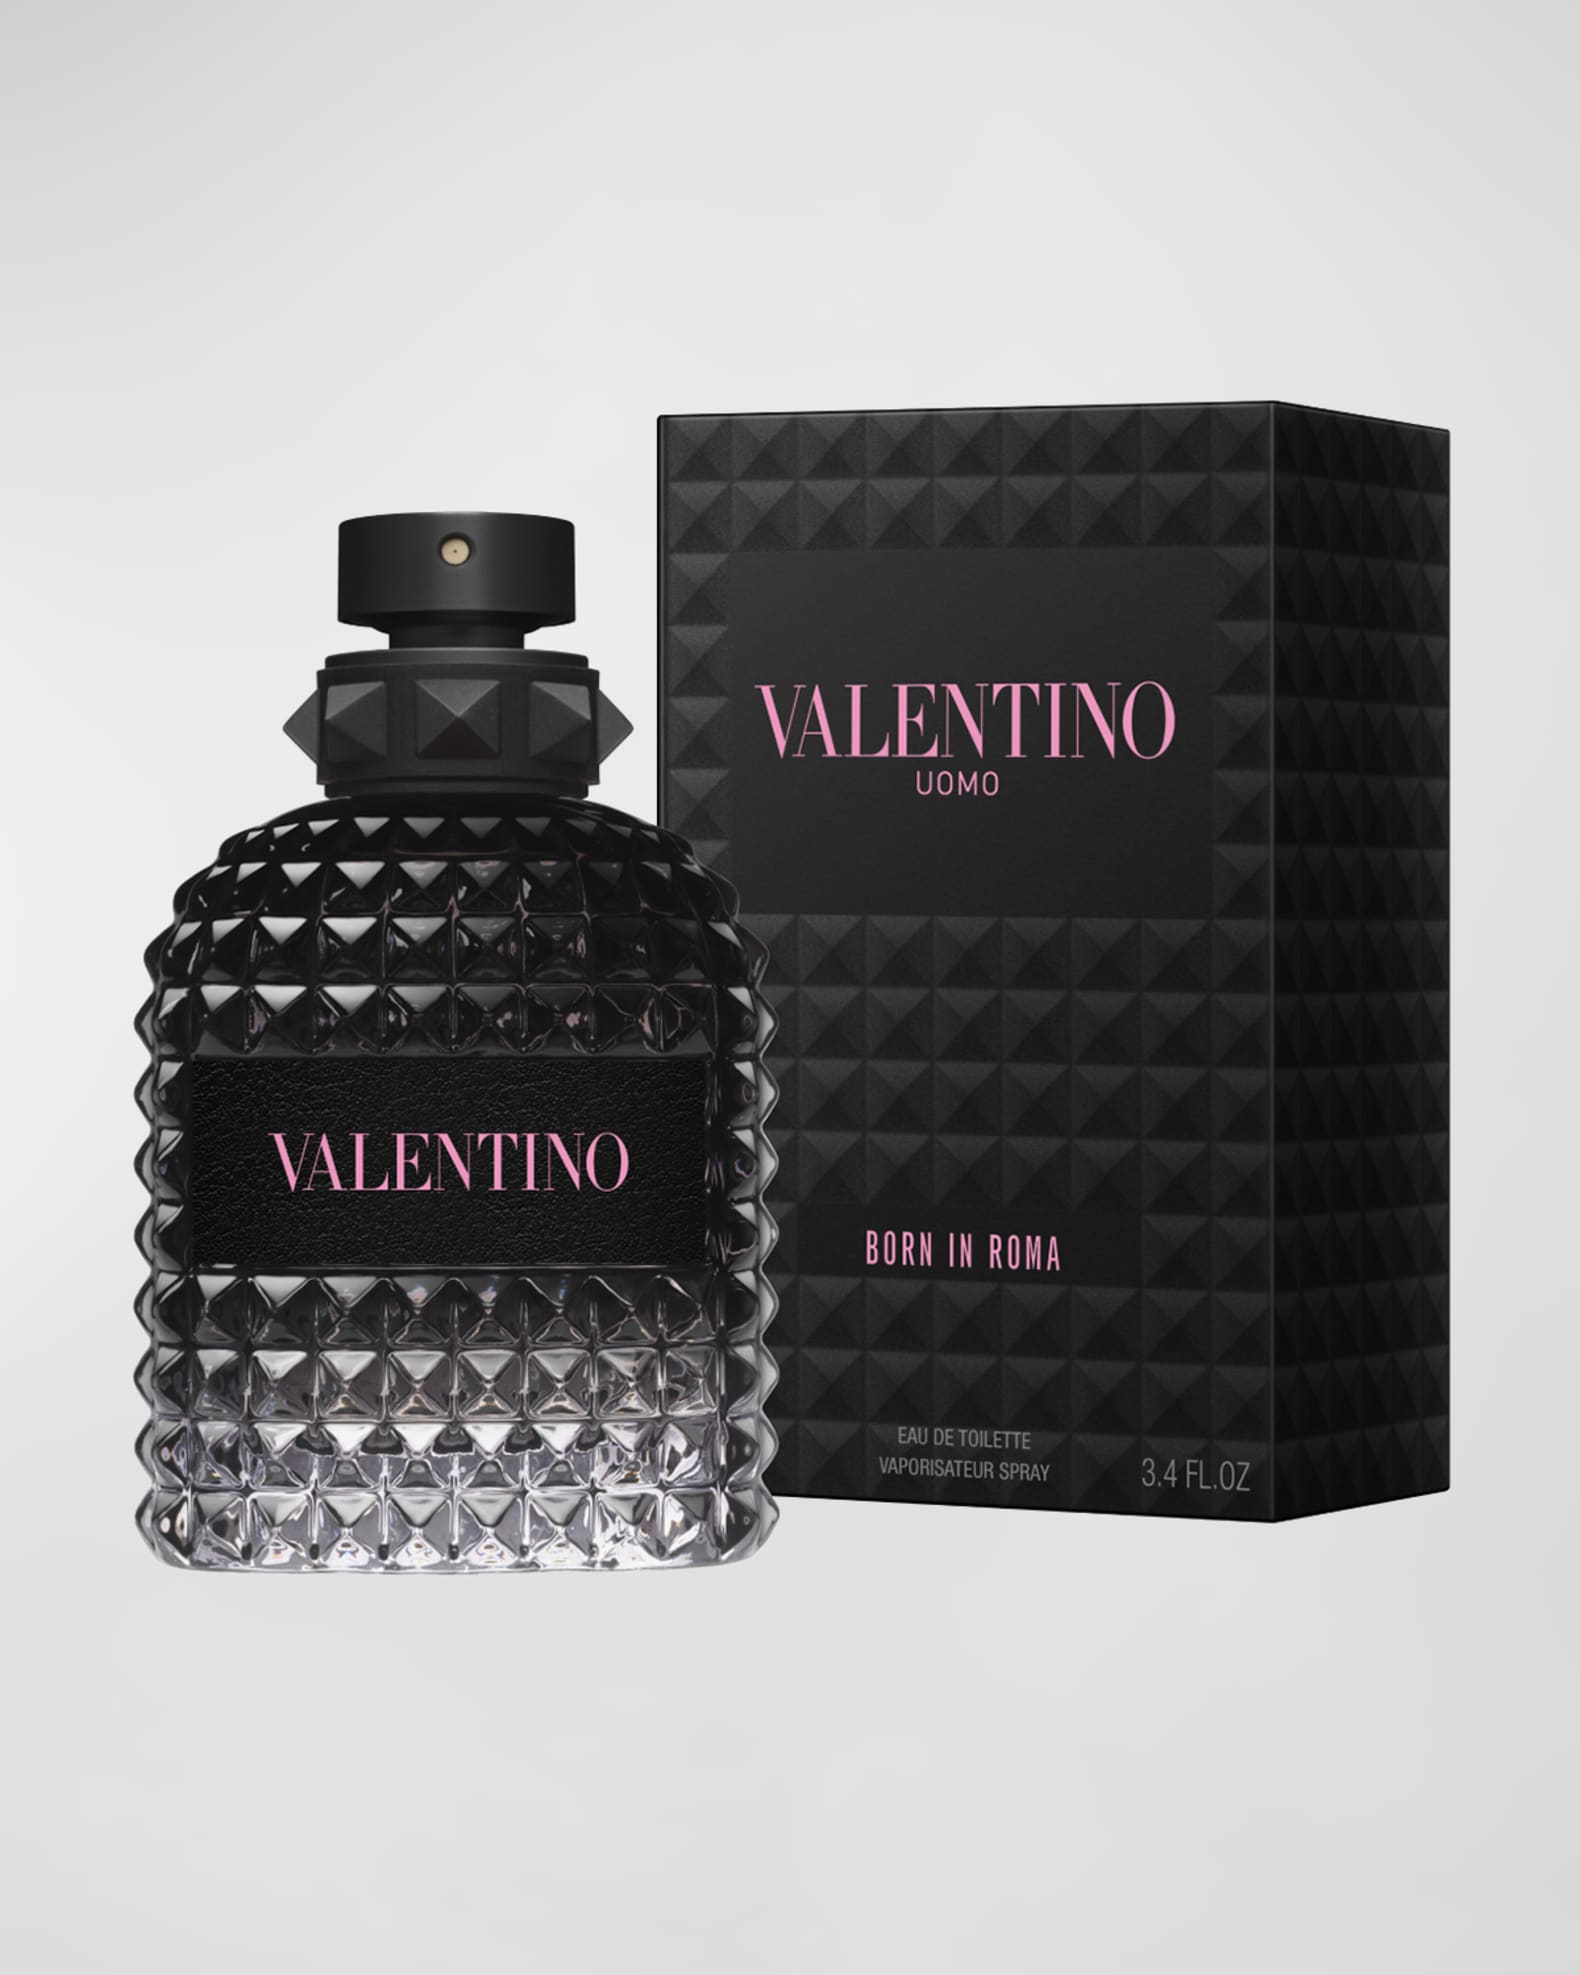 Valentino Uomo Born in Roma Eau de Toilette, 3.4 oz. Neiman Marcus